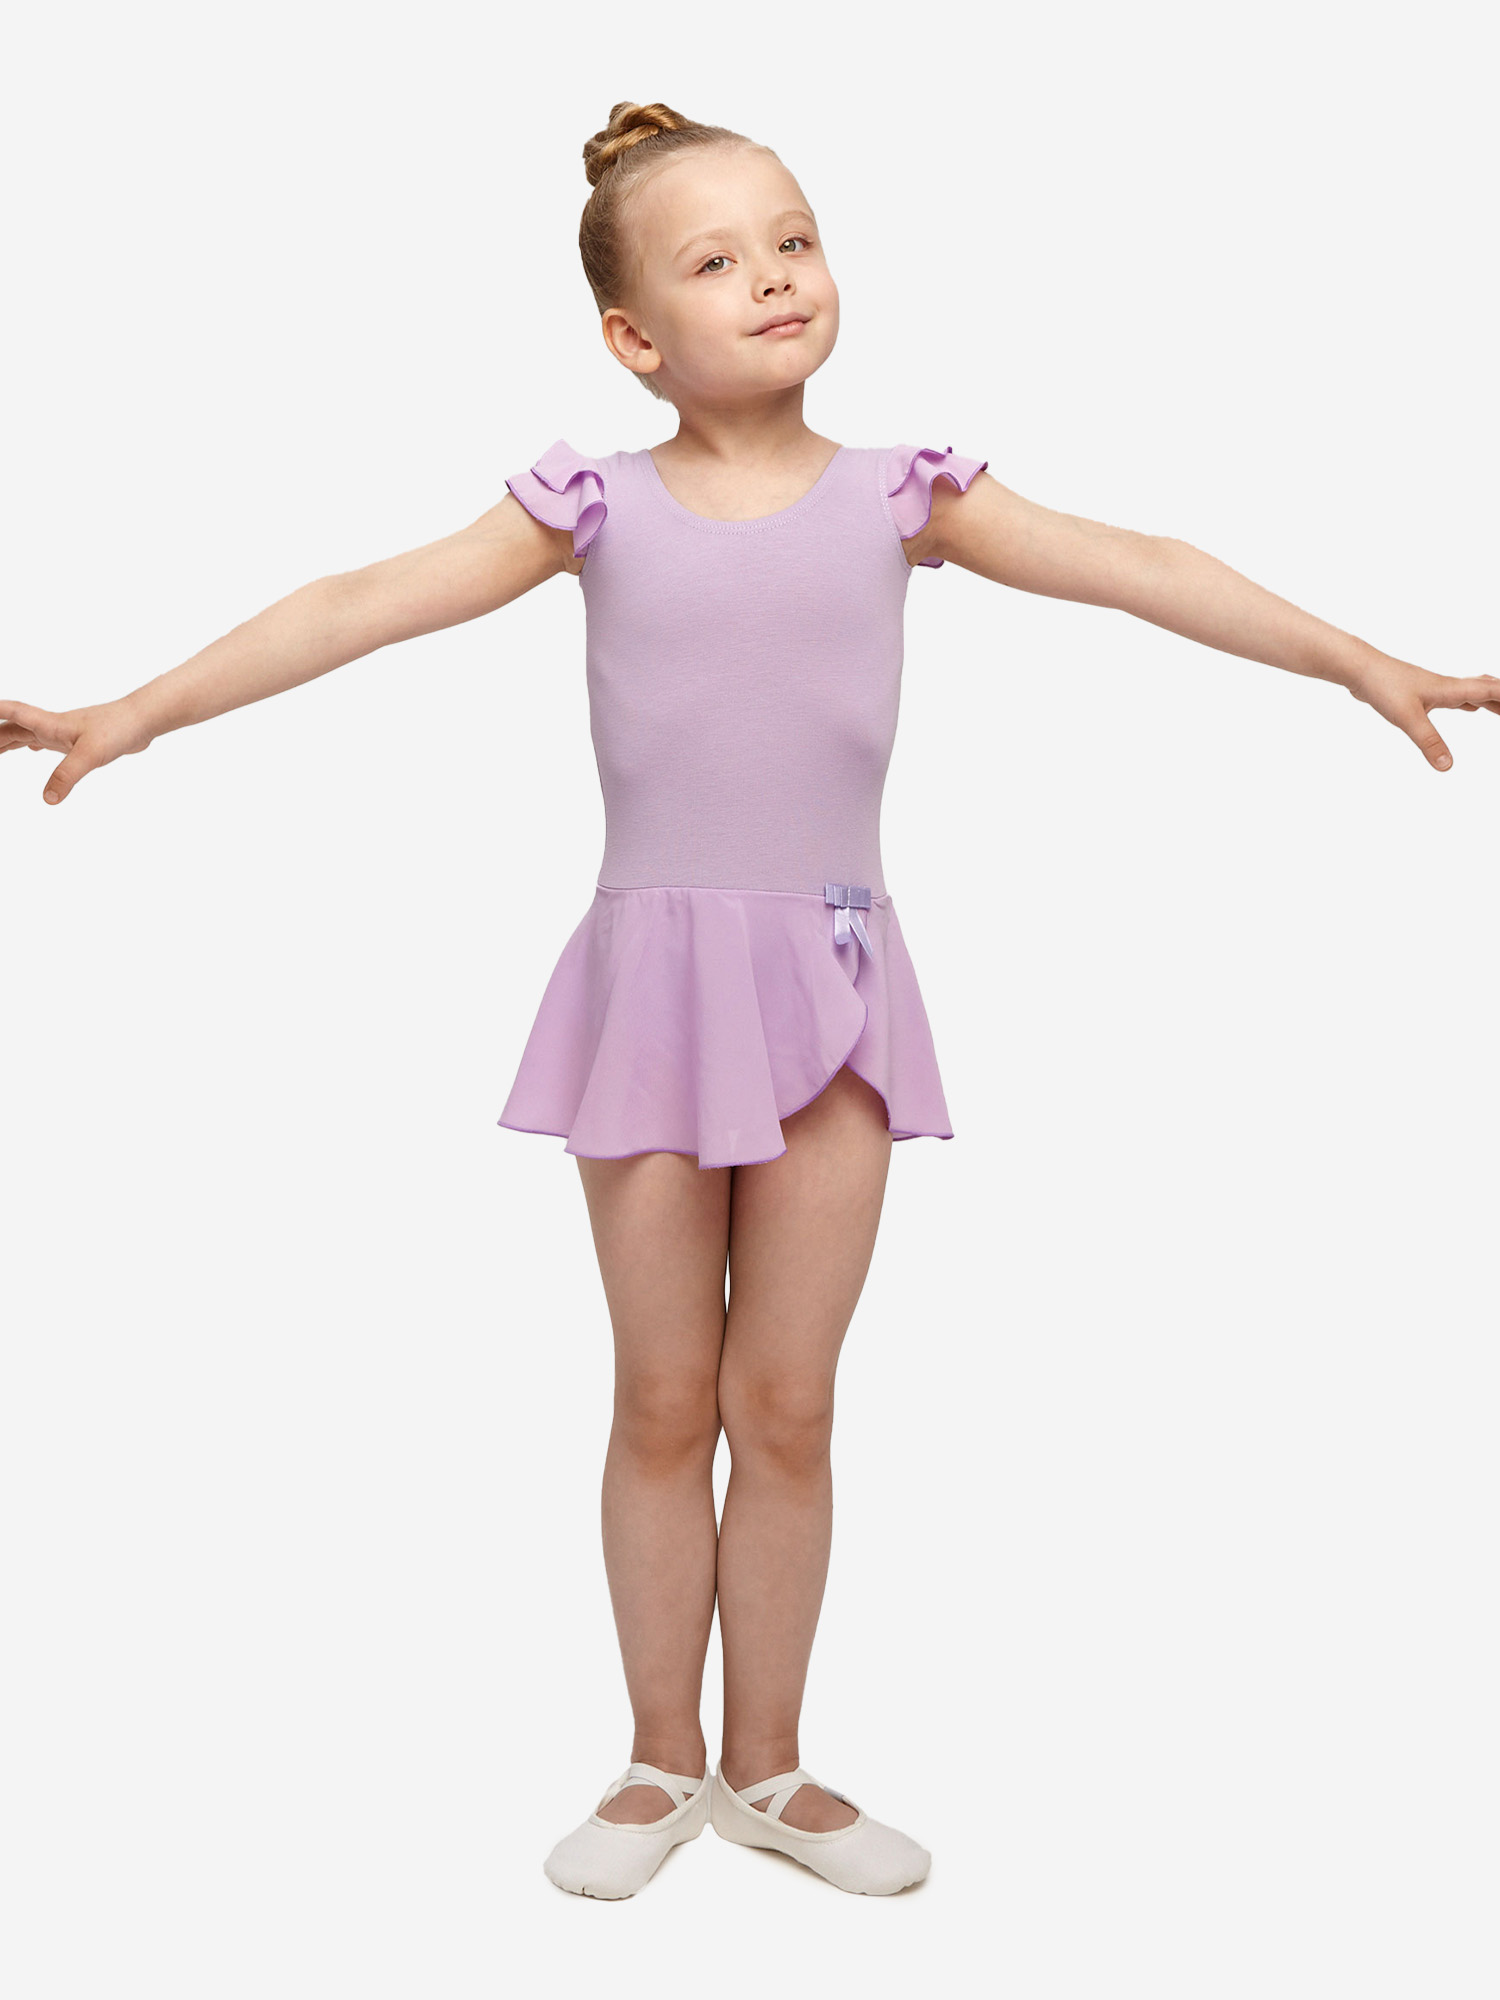 Купальник гимнастический Belkina с юбкой для танцев и тренировок, Фиолетовый купальник гимнастический belkina с юбкой пачкой для выступлений голубой